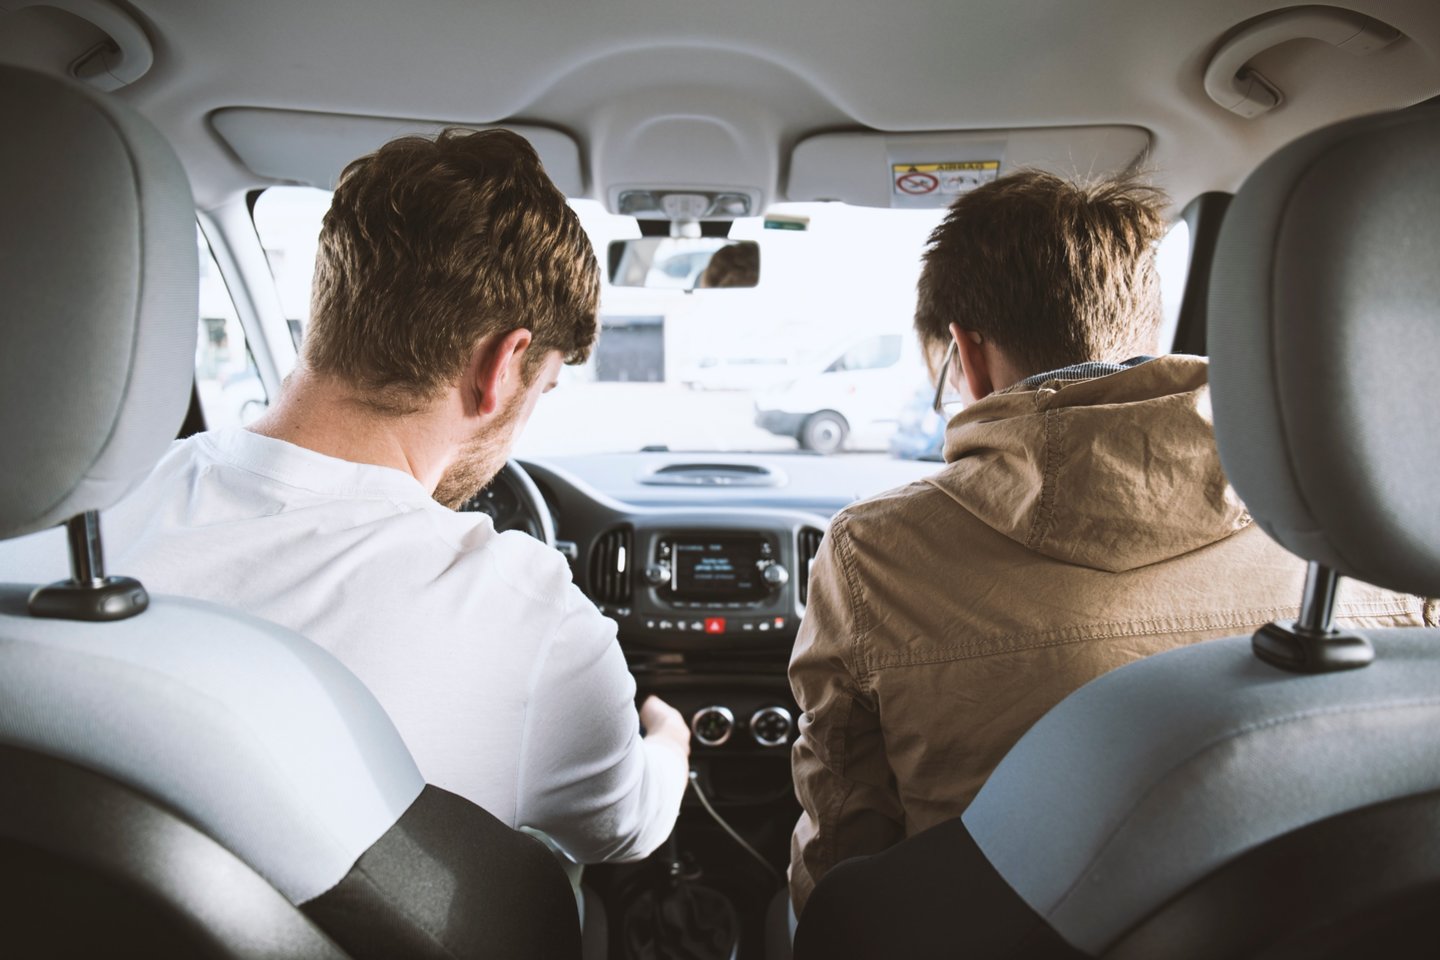 O štai Jungtinėje Karalystėje svarstoma uždrausti jaunesniems nei 25 metų vairuotojams vežti už save jaunesnius keleivius.<br>David Emrich/Unsplash nuotr.